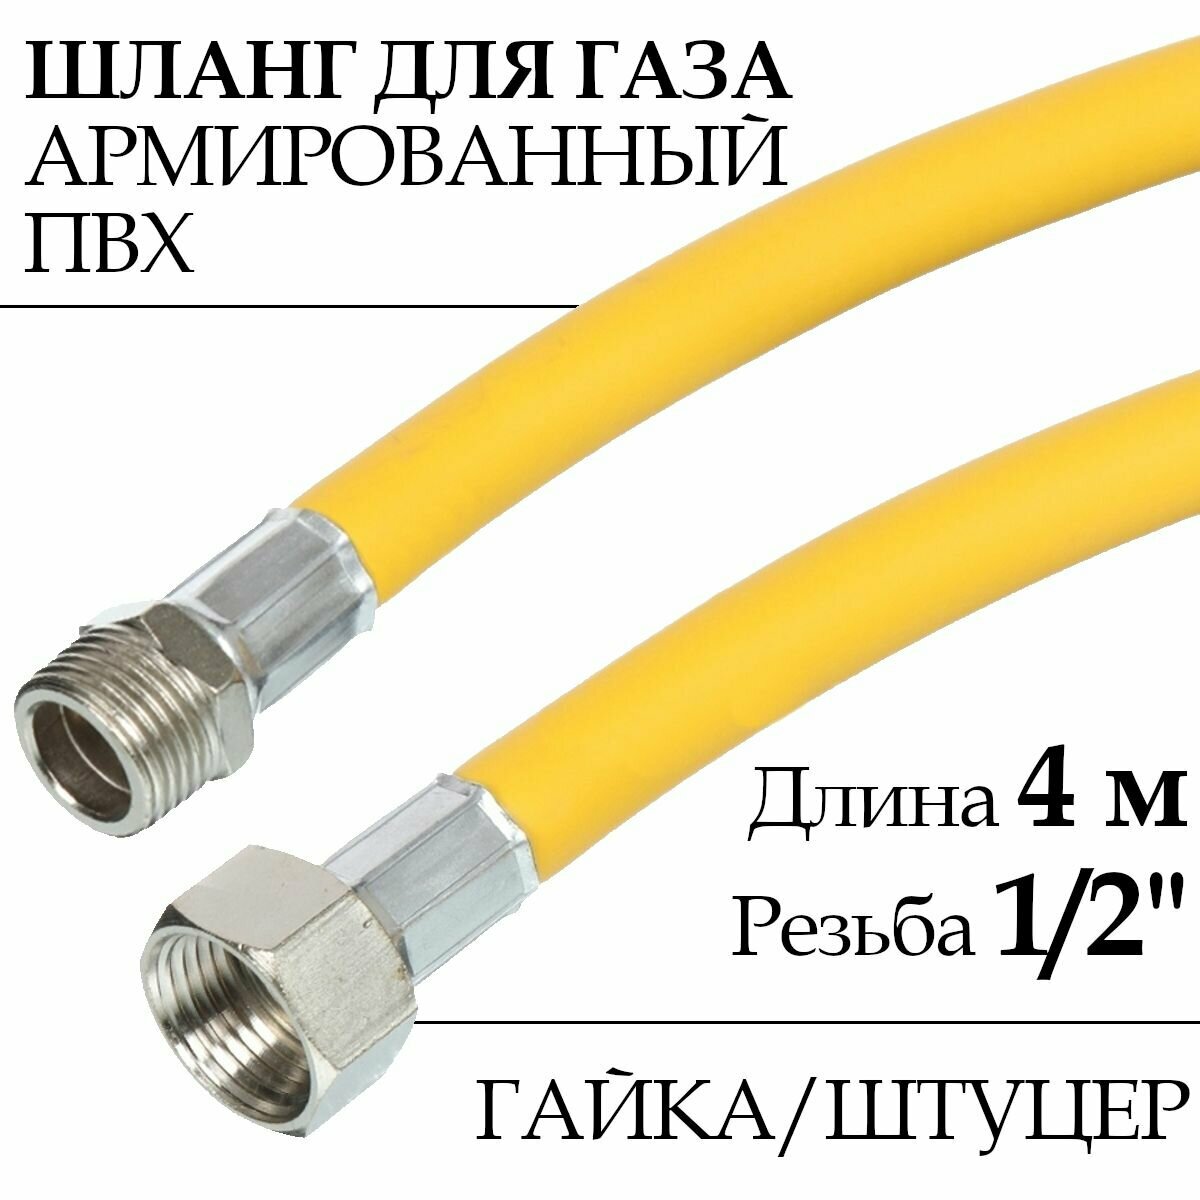 Шланг для газовых приборов (плит, баллонов) из ПВХ (желтый) 1/2" х 4,0 м, гайка/штуцер